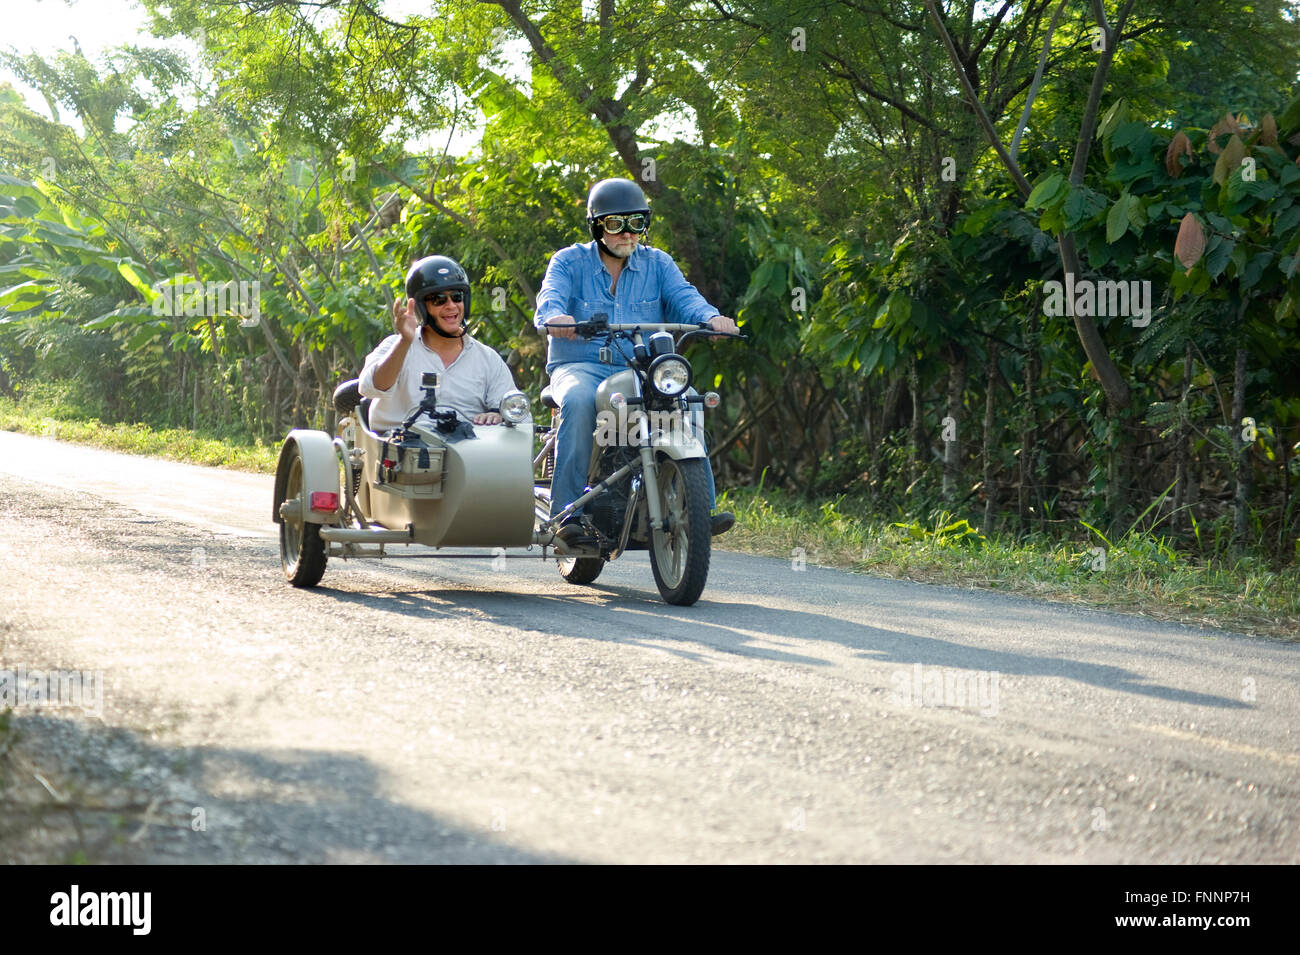 Präsident Rafael Correa und Showmaster Peter Greenberg fahren einen Oldtimer  Motorrad mit Beiwagen in der Kakao-Region während der Dreharbeiten von  Ecuador: The Royal Tour Stockfotografie - Alamy